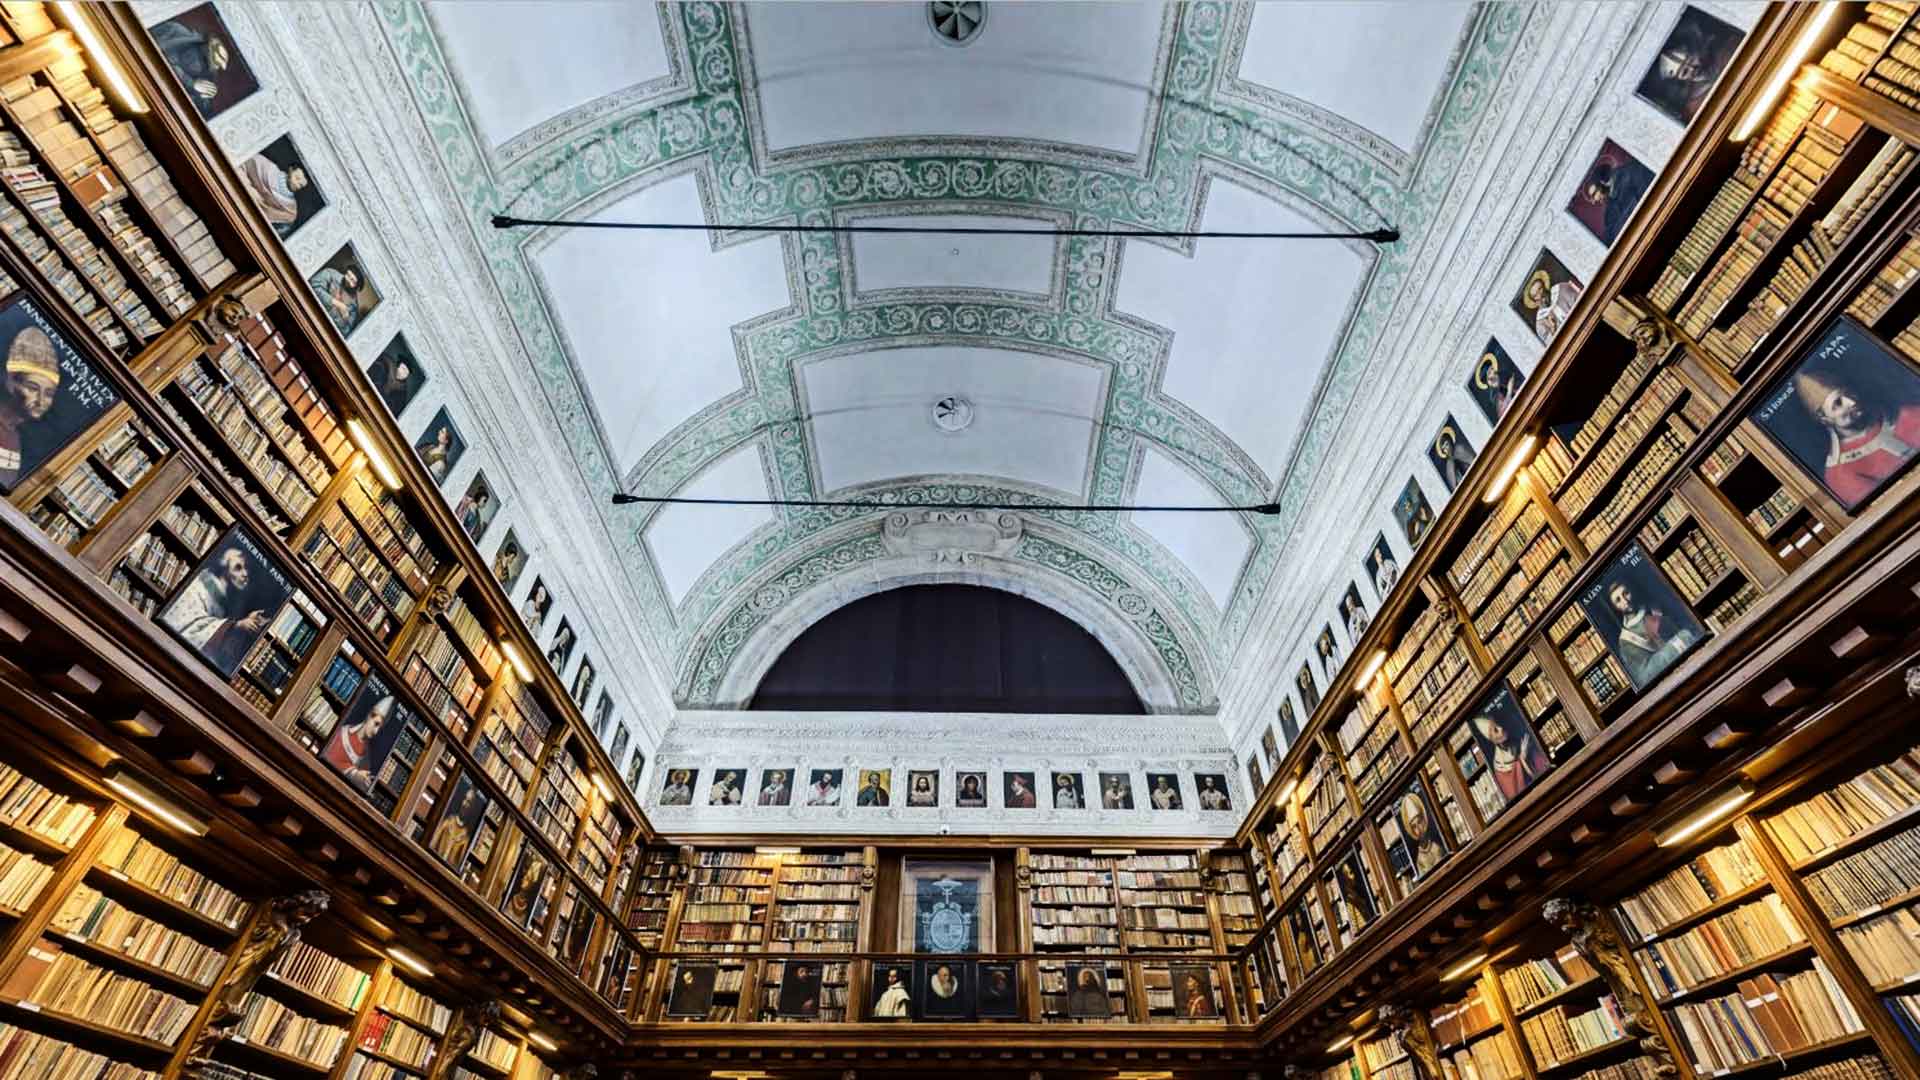 Амброзианская библиотека, фото снизу - книги на полках и потолок